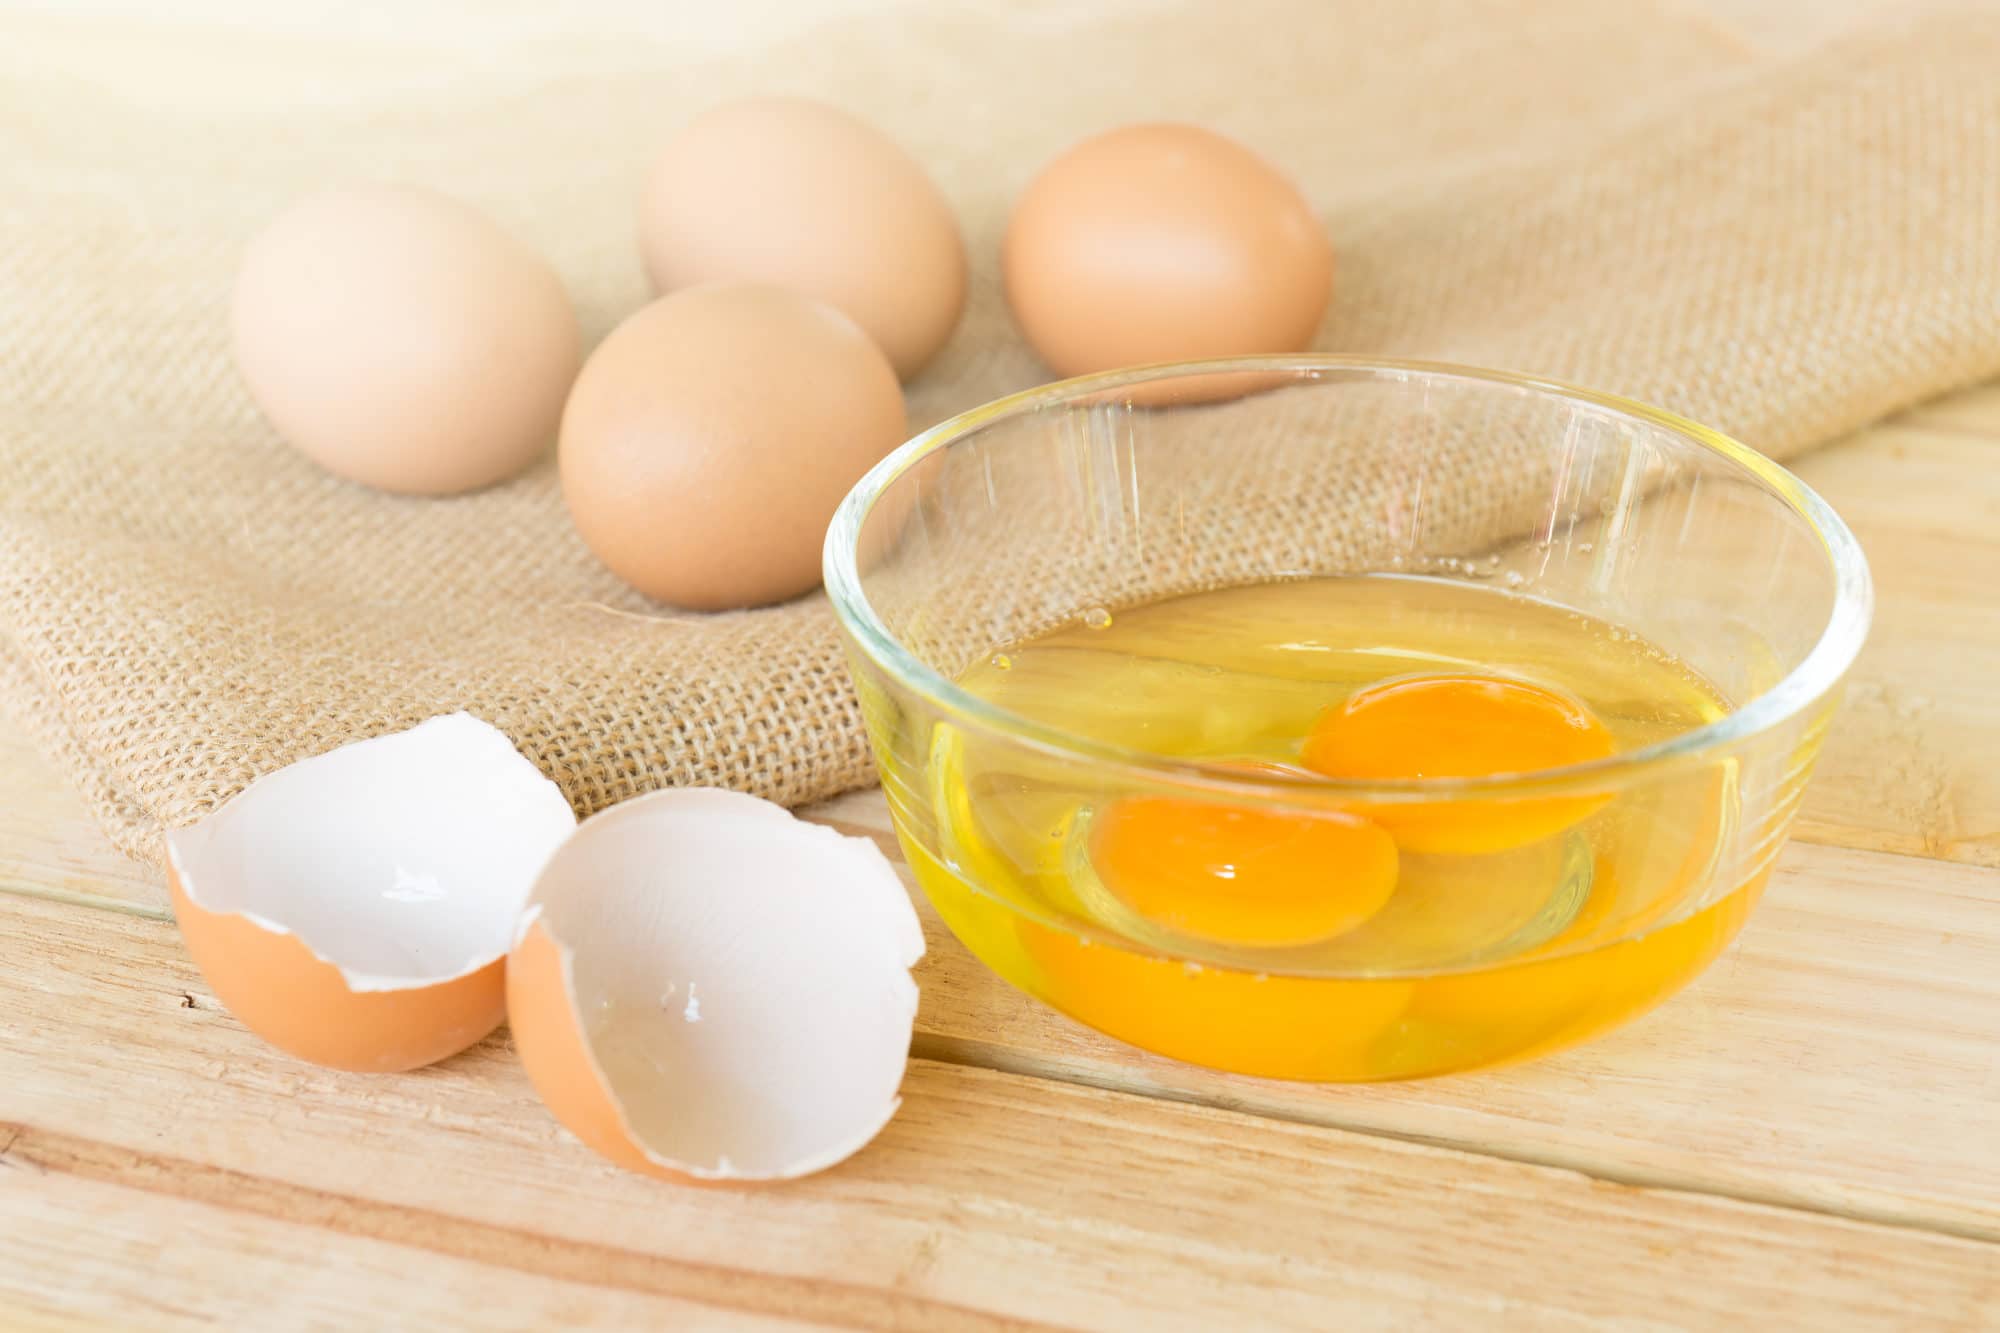 Сырые яйца: польза и вред, можно ли пить натощак, сколько хранятся